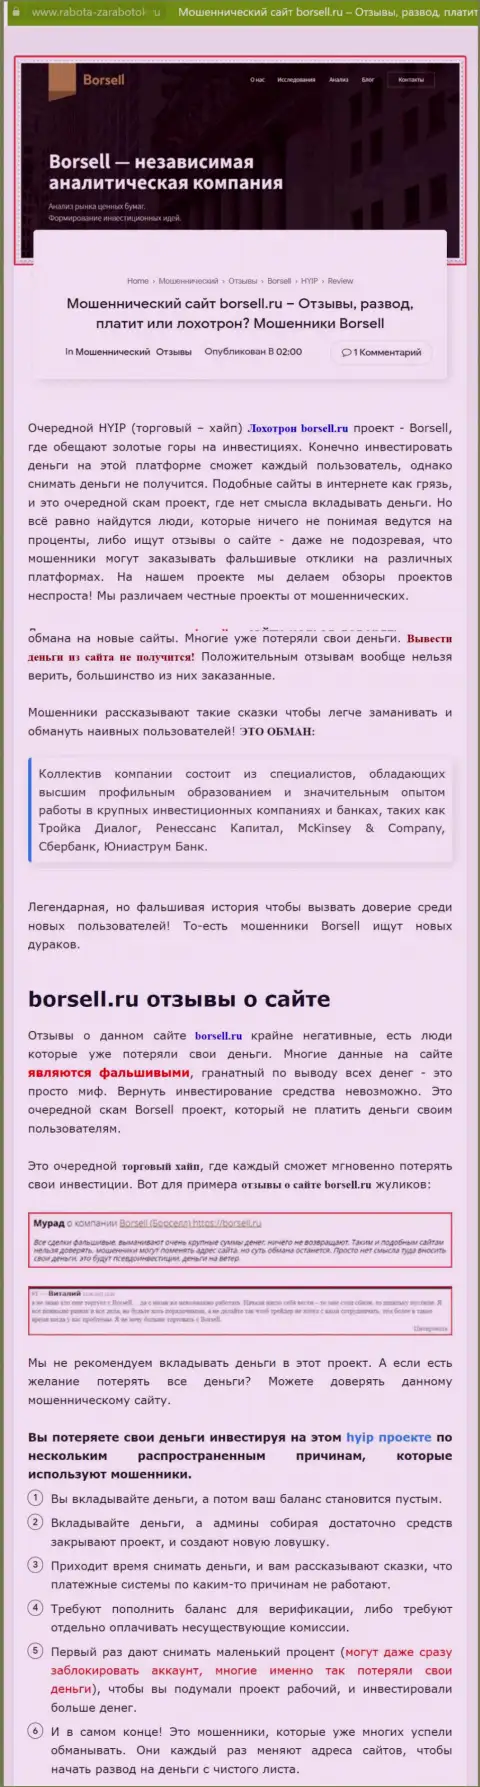 Детально прочитайте условия сотрудничества Borsell Ru, в организации разводят (обзор противозаконных деяний)